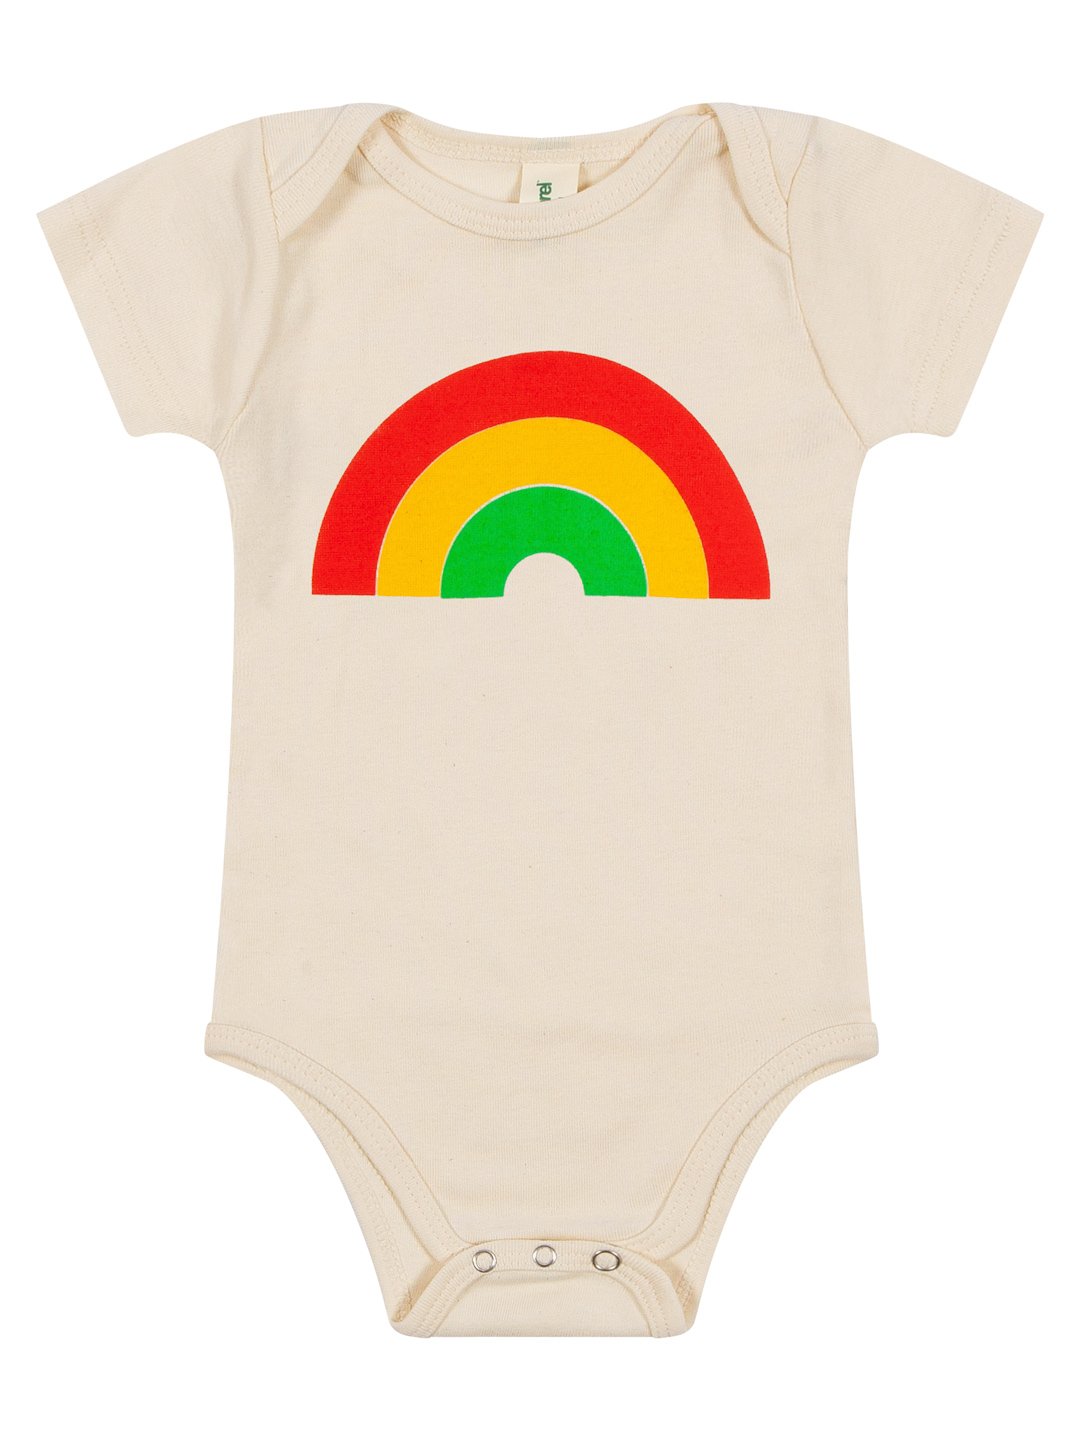 Rainbow Baby Onesie Natural-Culk